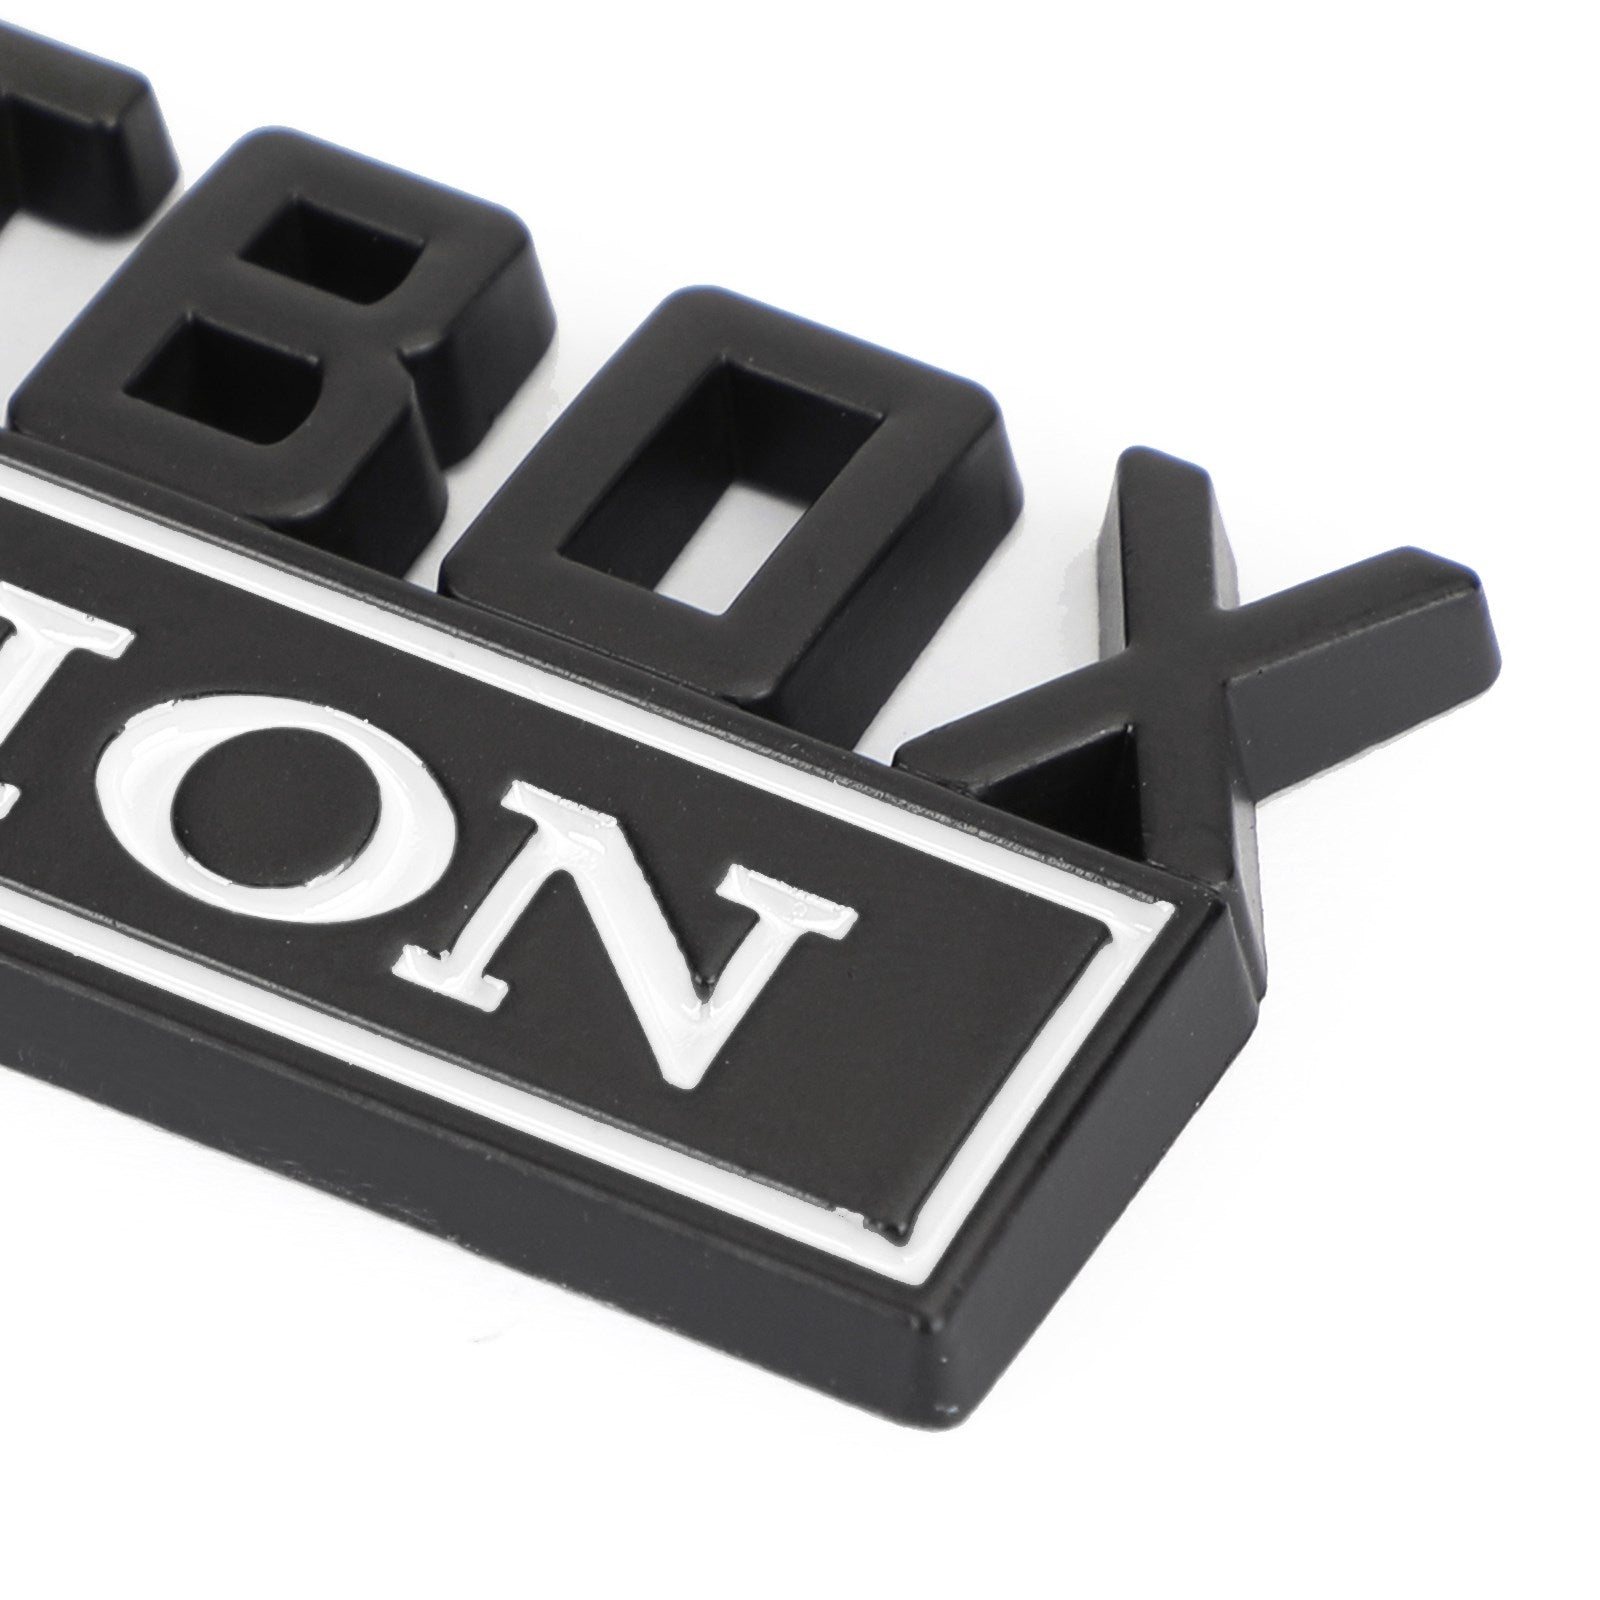 Emblema de edición Shitbox de 2 piezas, insignias adhesivas para Ford Chevr, coche, camión #C genérico